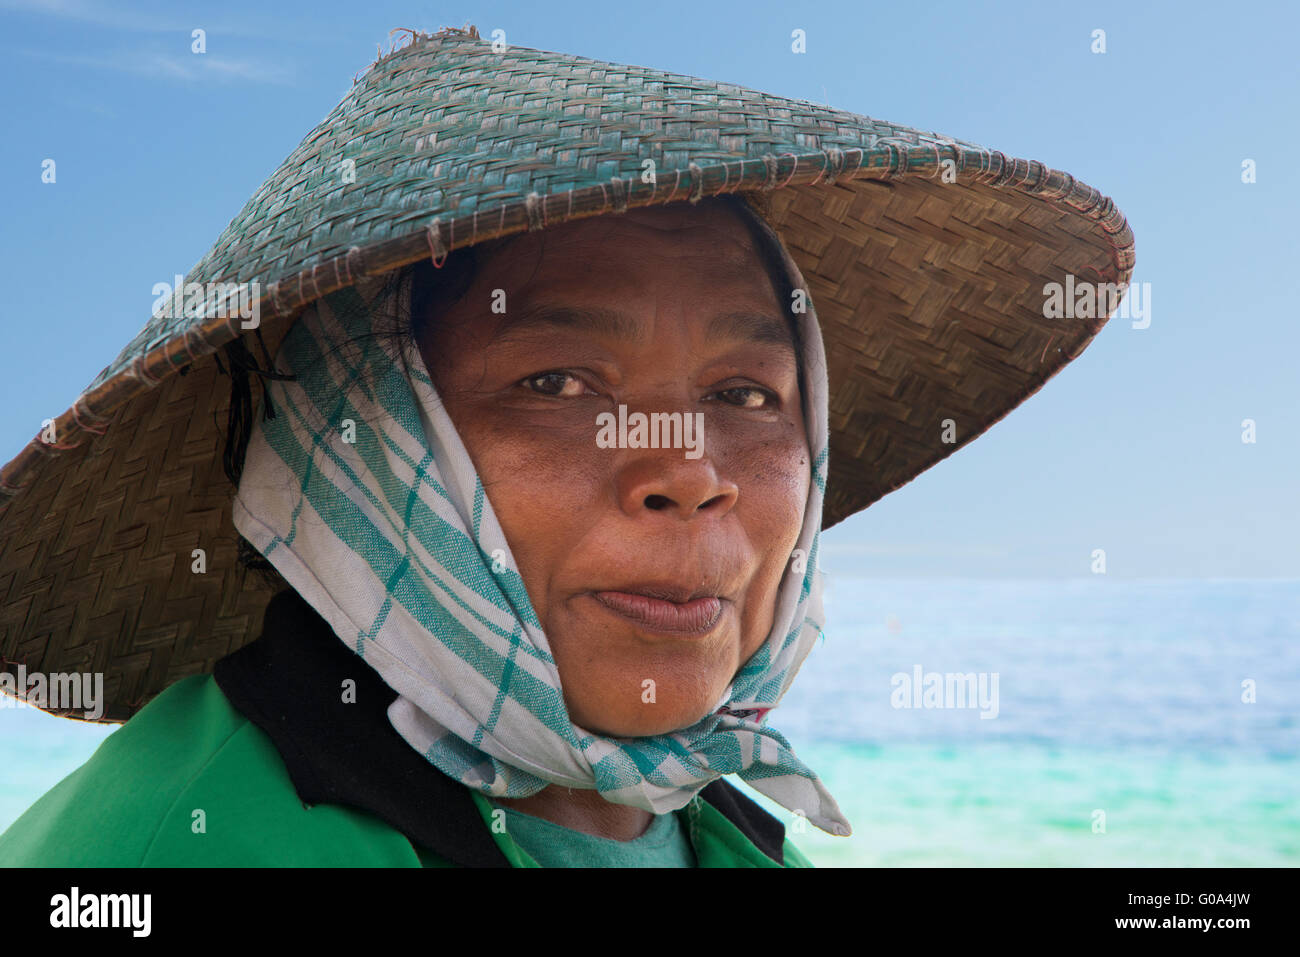 Pêcheuse Portrait portant chapeau conique Plage de Geger Bali Indonésie Banque D'Images